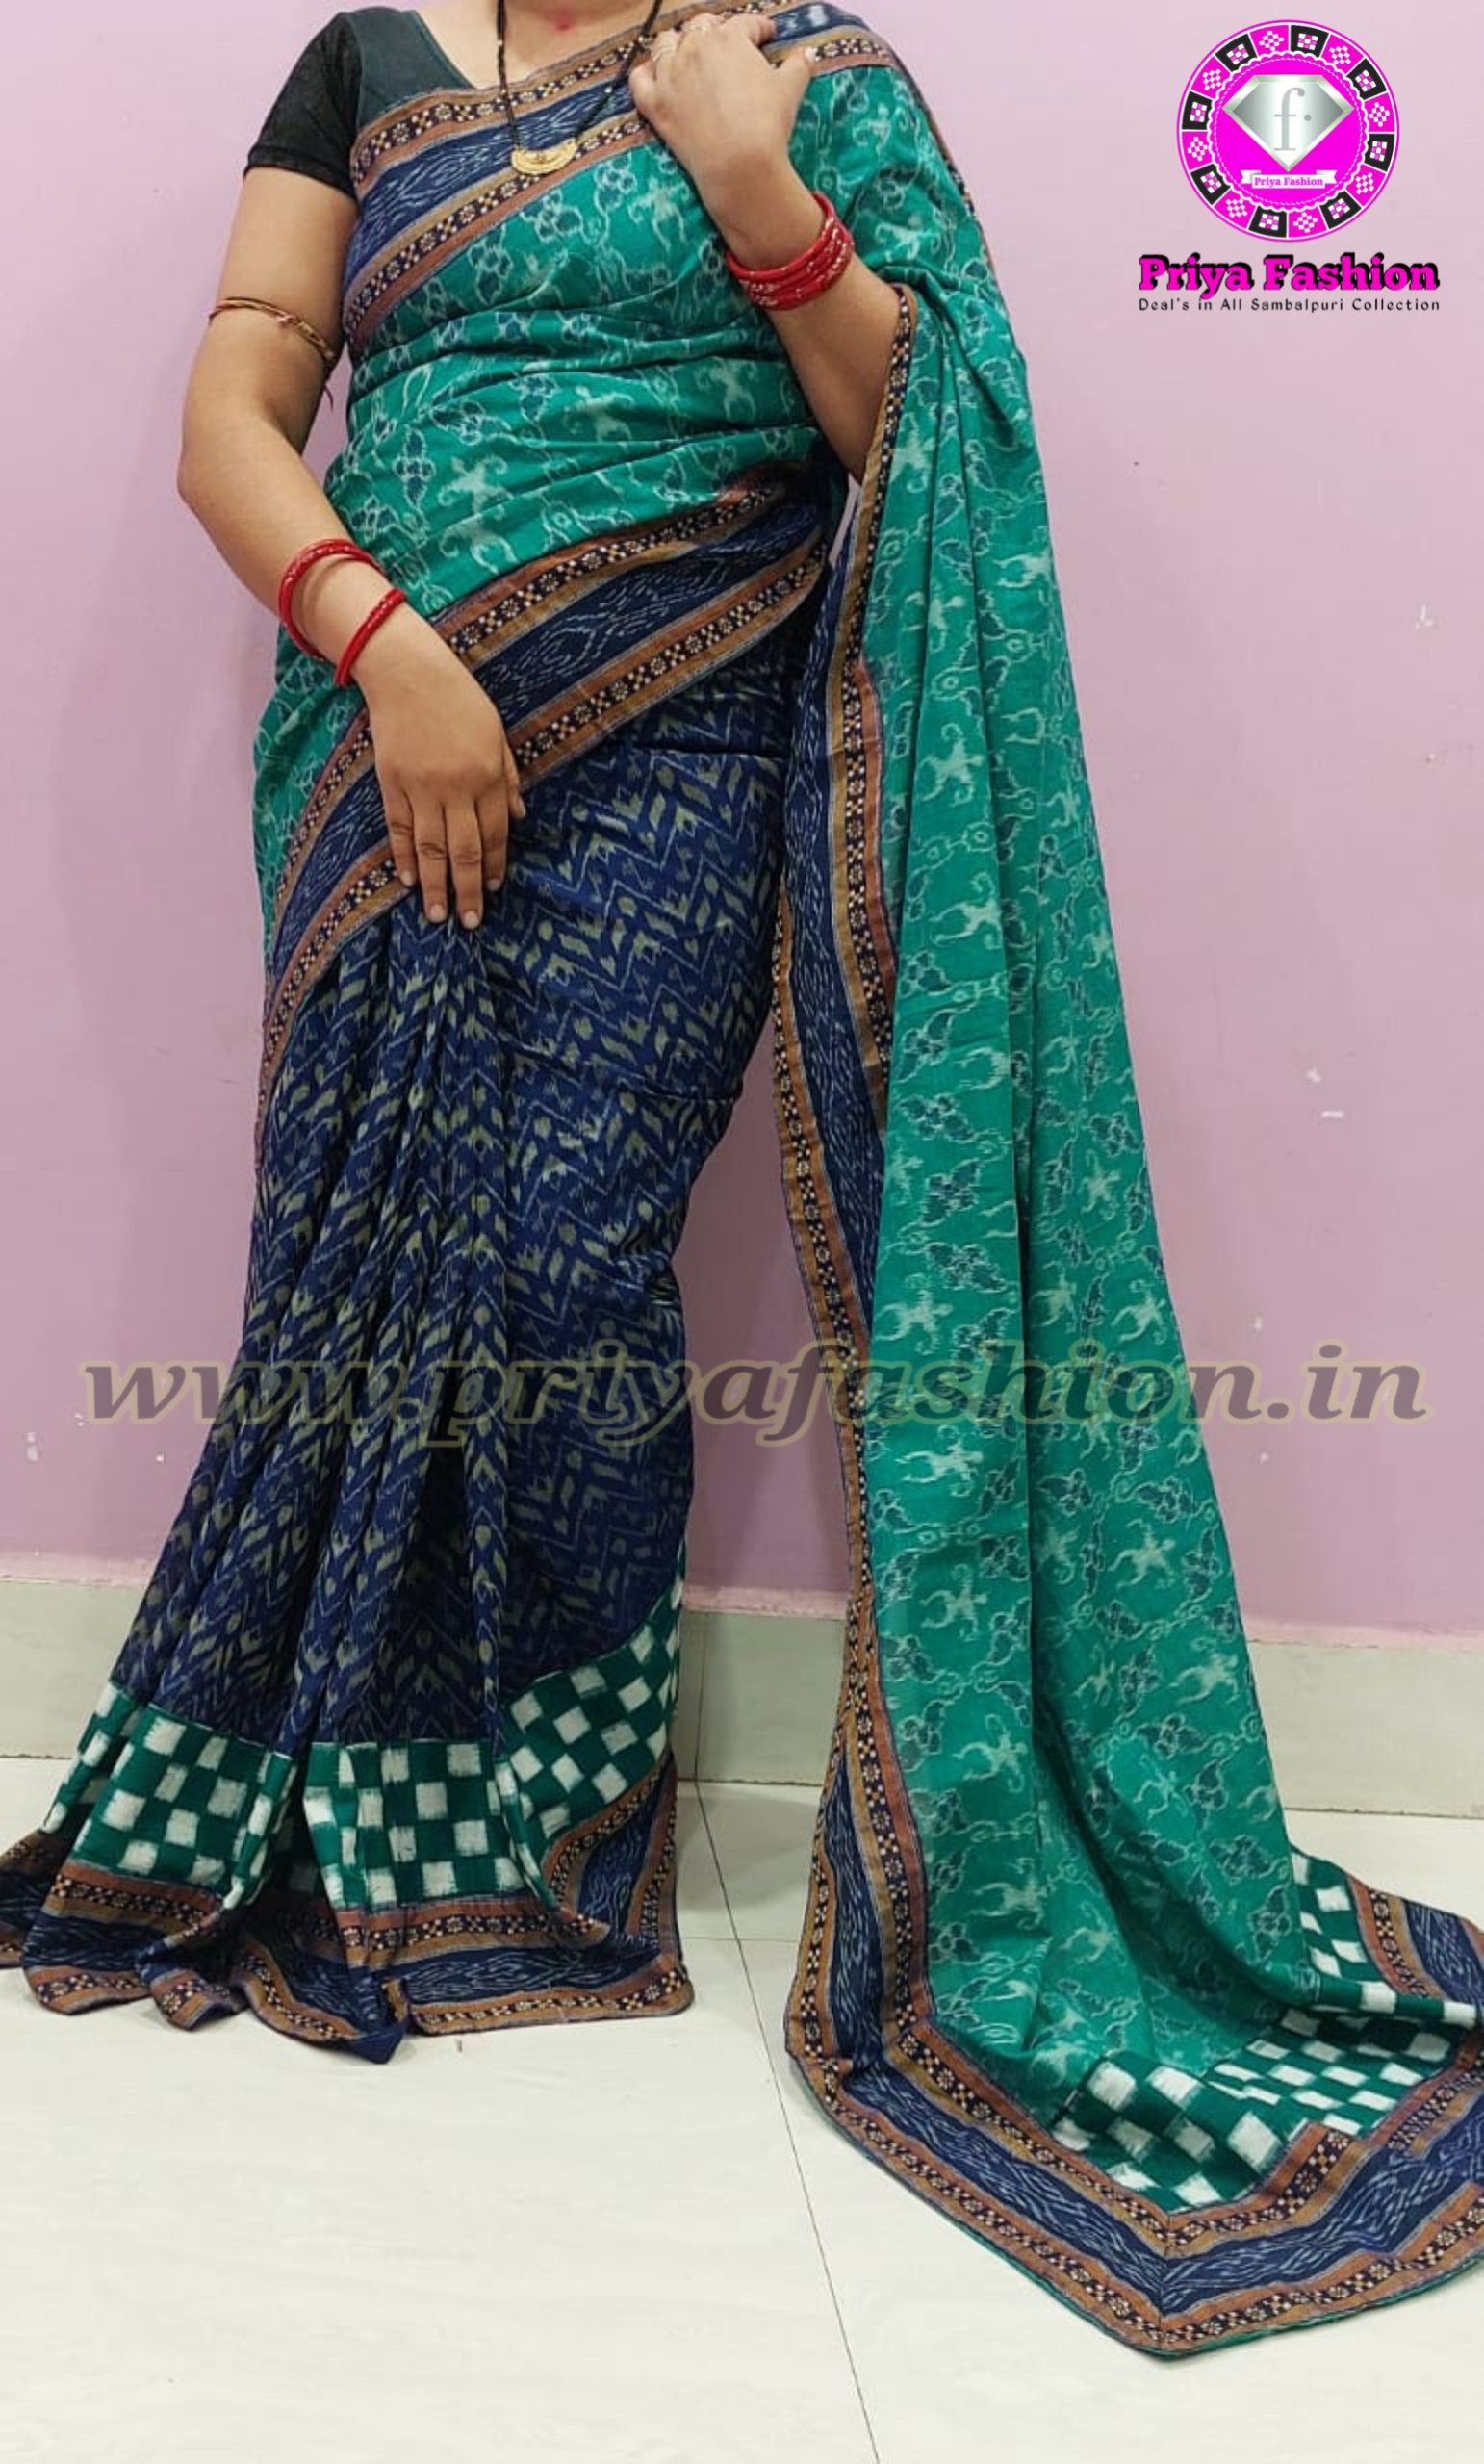 Sambalpuri Suta (Cotton) Sarees with Pasapalli motif | Cotton saree, Saree,  Mercerized cotton